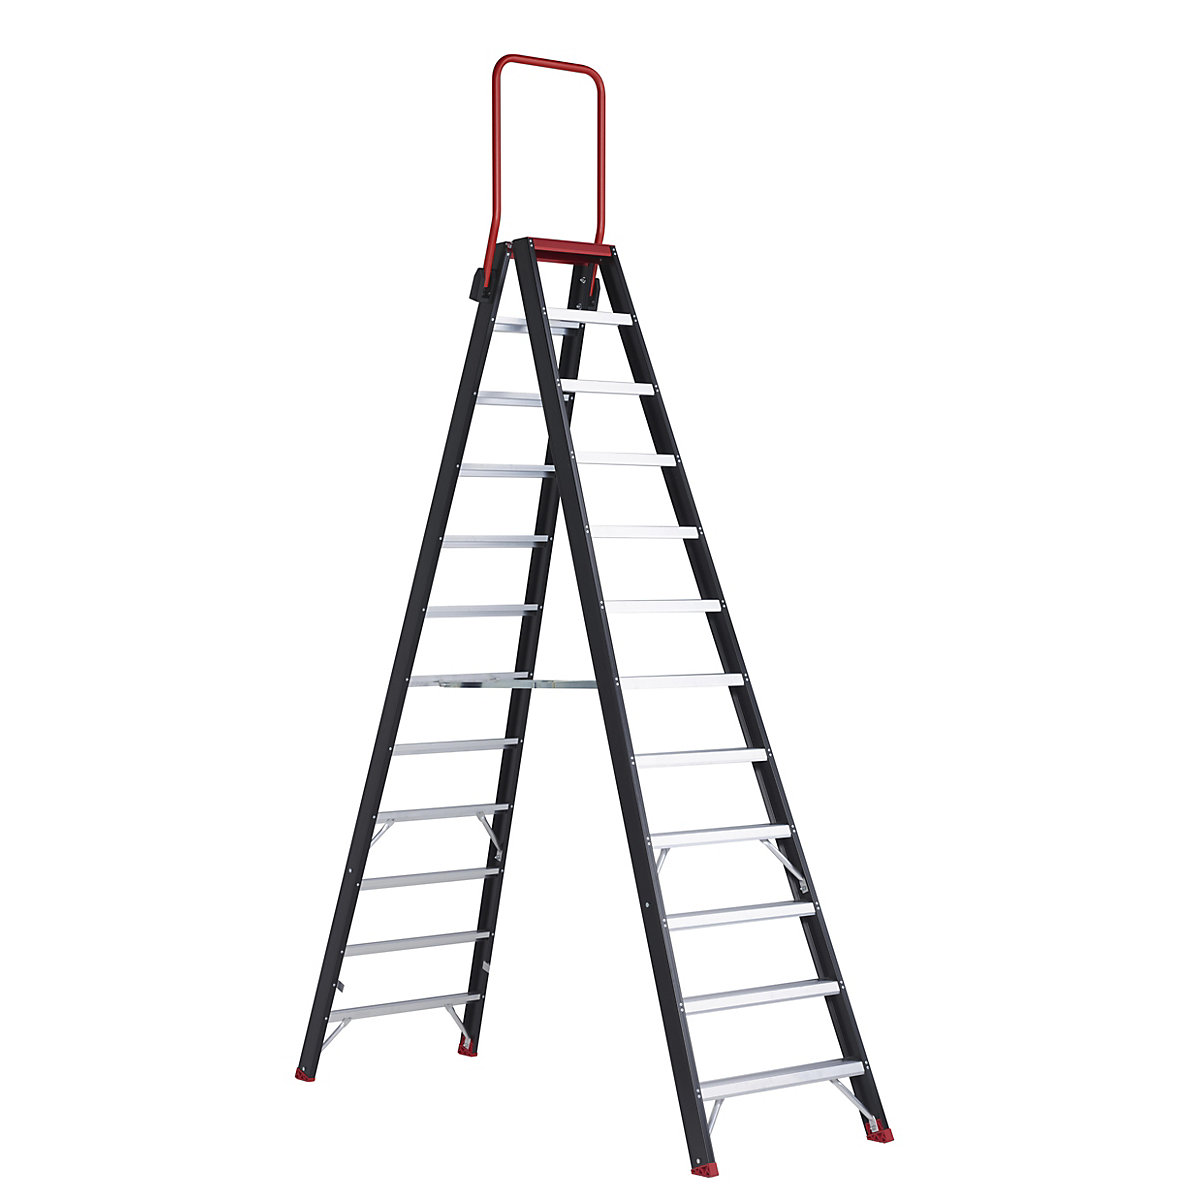 Escalera tipo tijera de seguridad – Altrex, ascenso por ambos lados, 2 x 12 peldaños-10